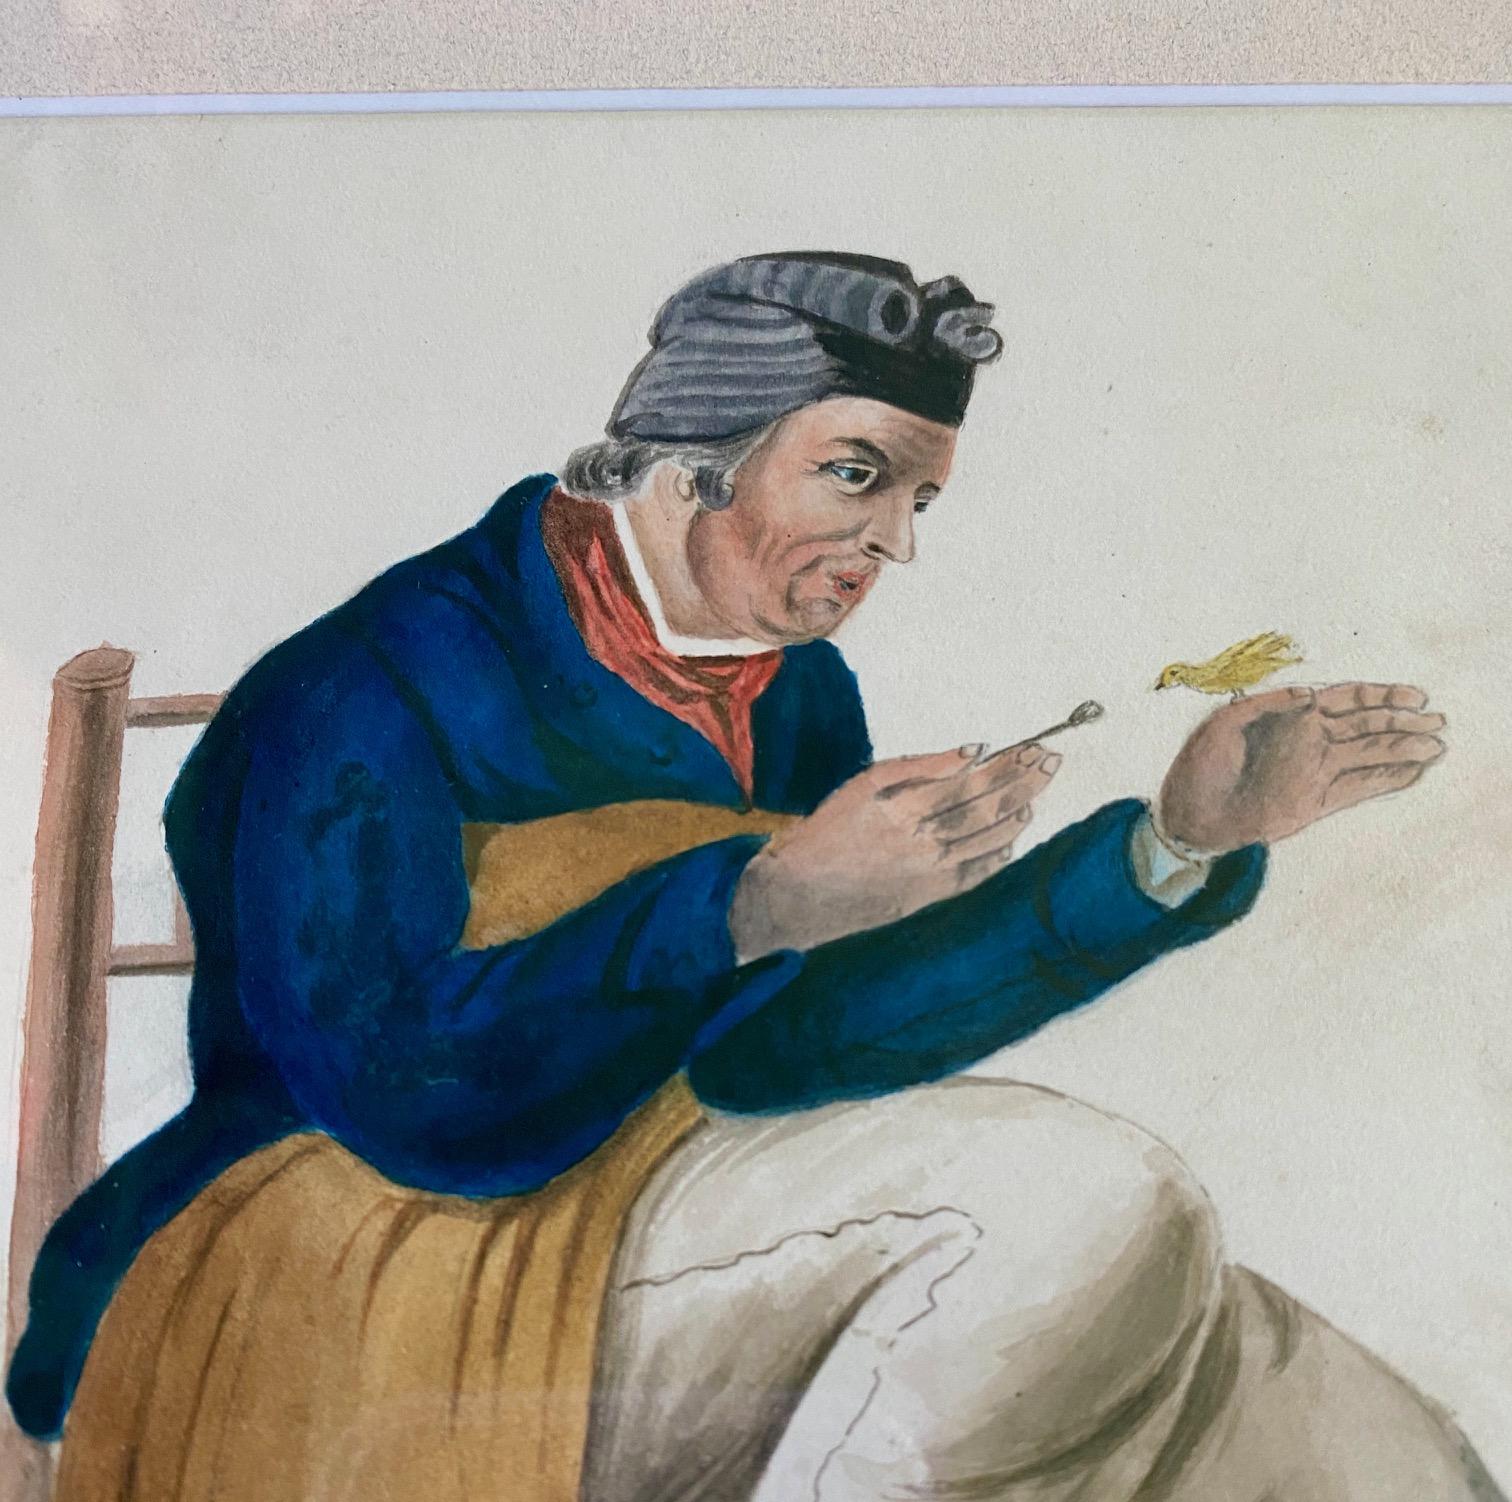 Antike Aquarellansicht eines Seemanns mit Vogel, um 1800, ein schönes, detailliertes Gemälde eines Seemanns, der in einem rauen Stuhl sitzt und zärtlich einen Finken füttert, der auf seiner Hand sitzt, mit der Inschrift 